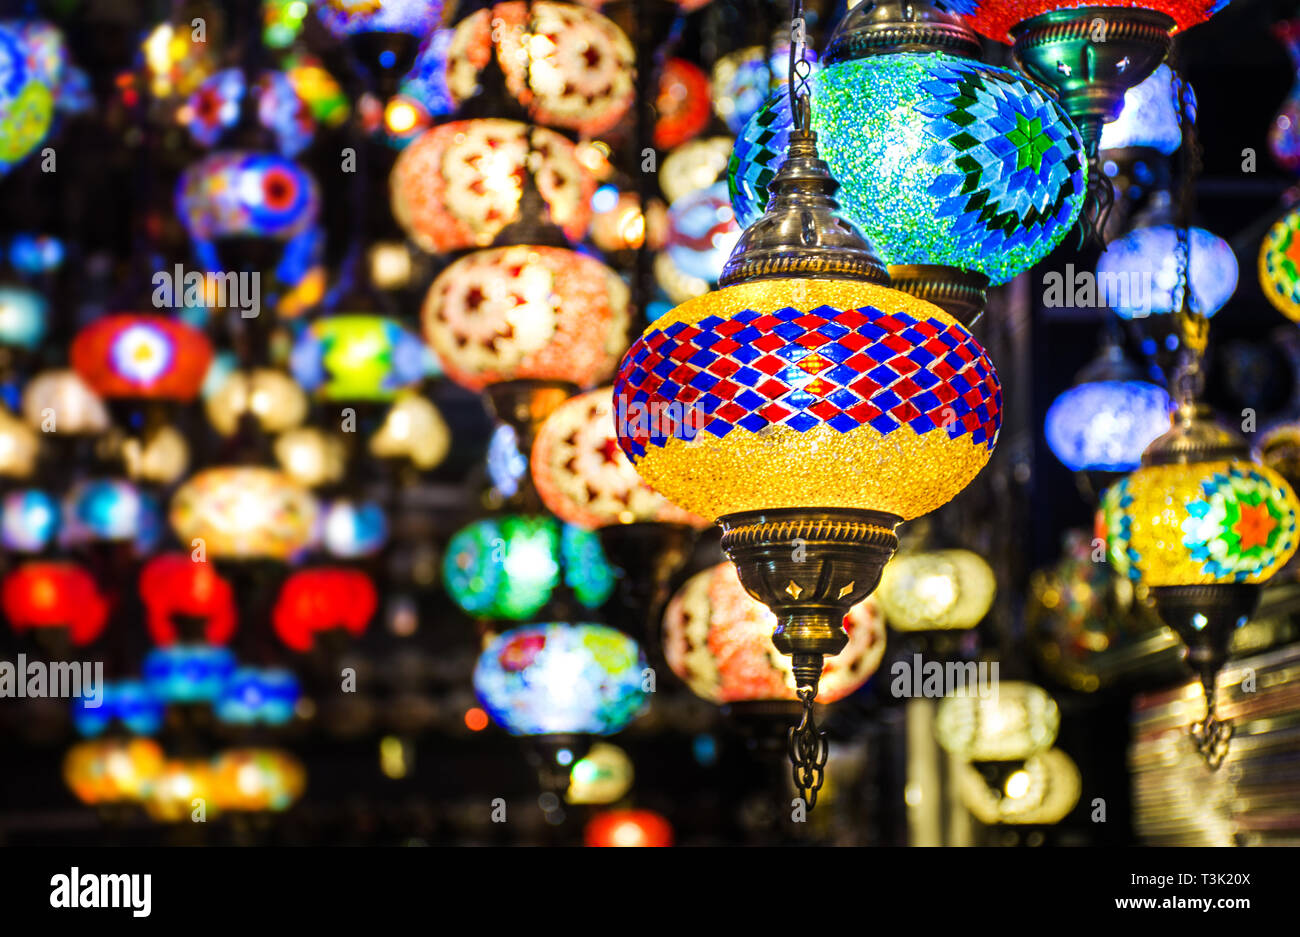 Schönen traditionellen Ramadan Licht Lampe mit unscharfen Hintergrund - Schuß von Dubai Spice Souk, berühmte tourkish Licht, Platz in Dubai - VAE Stockfoto